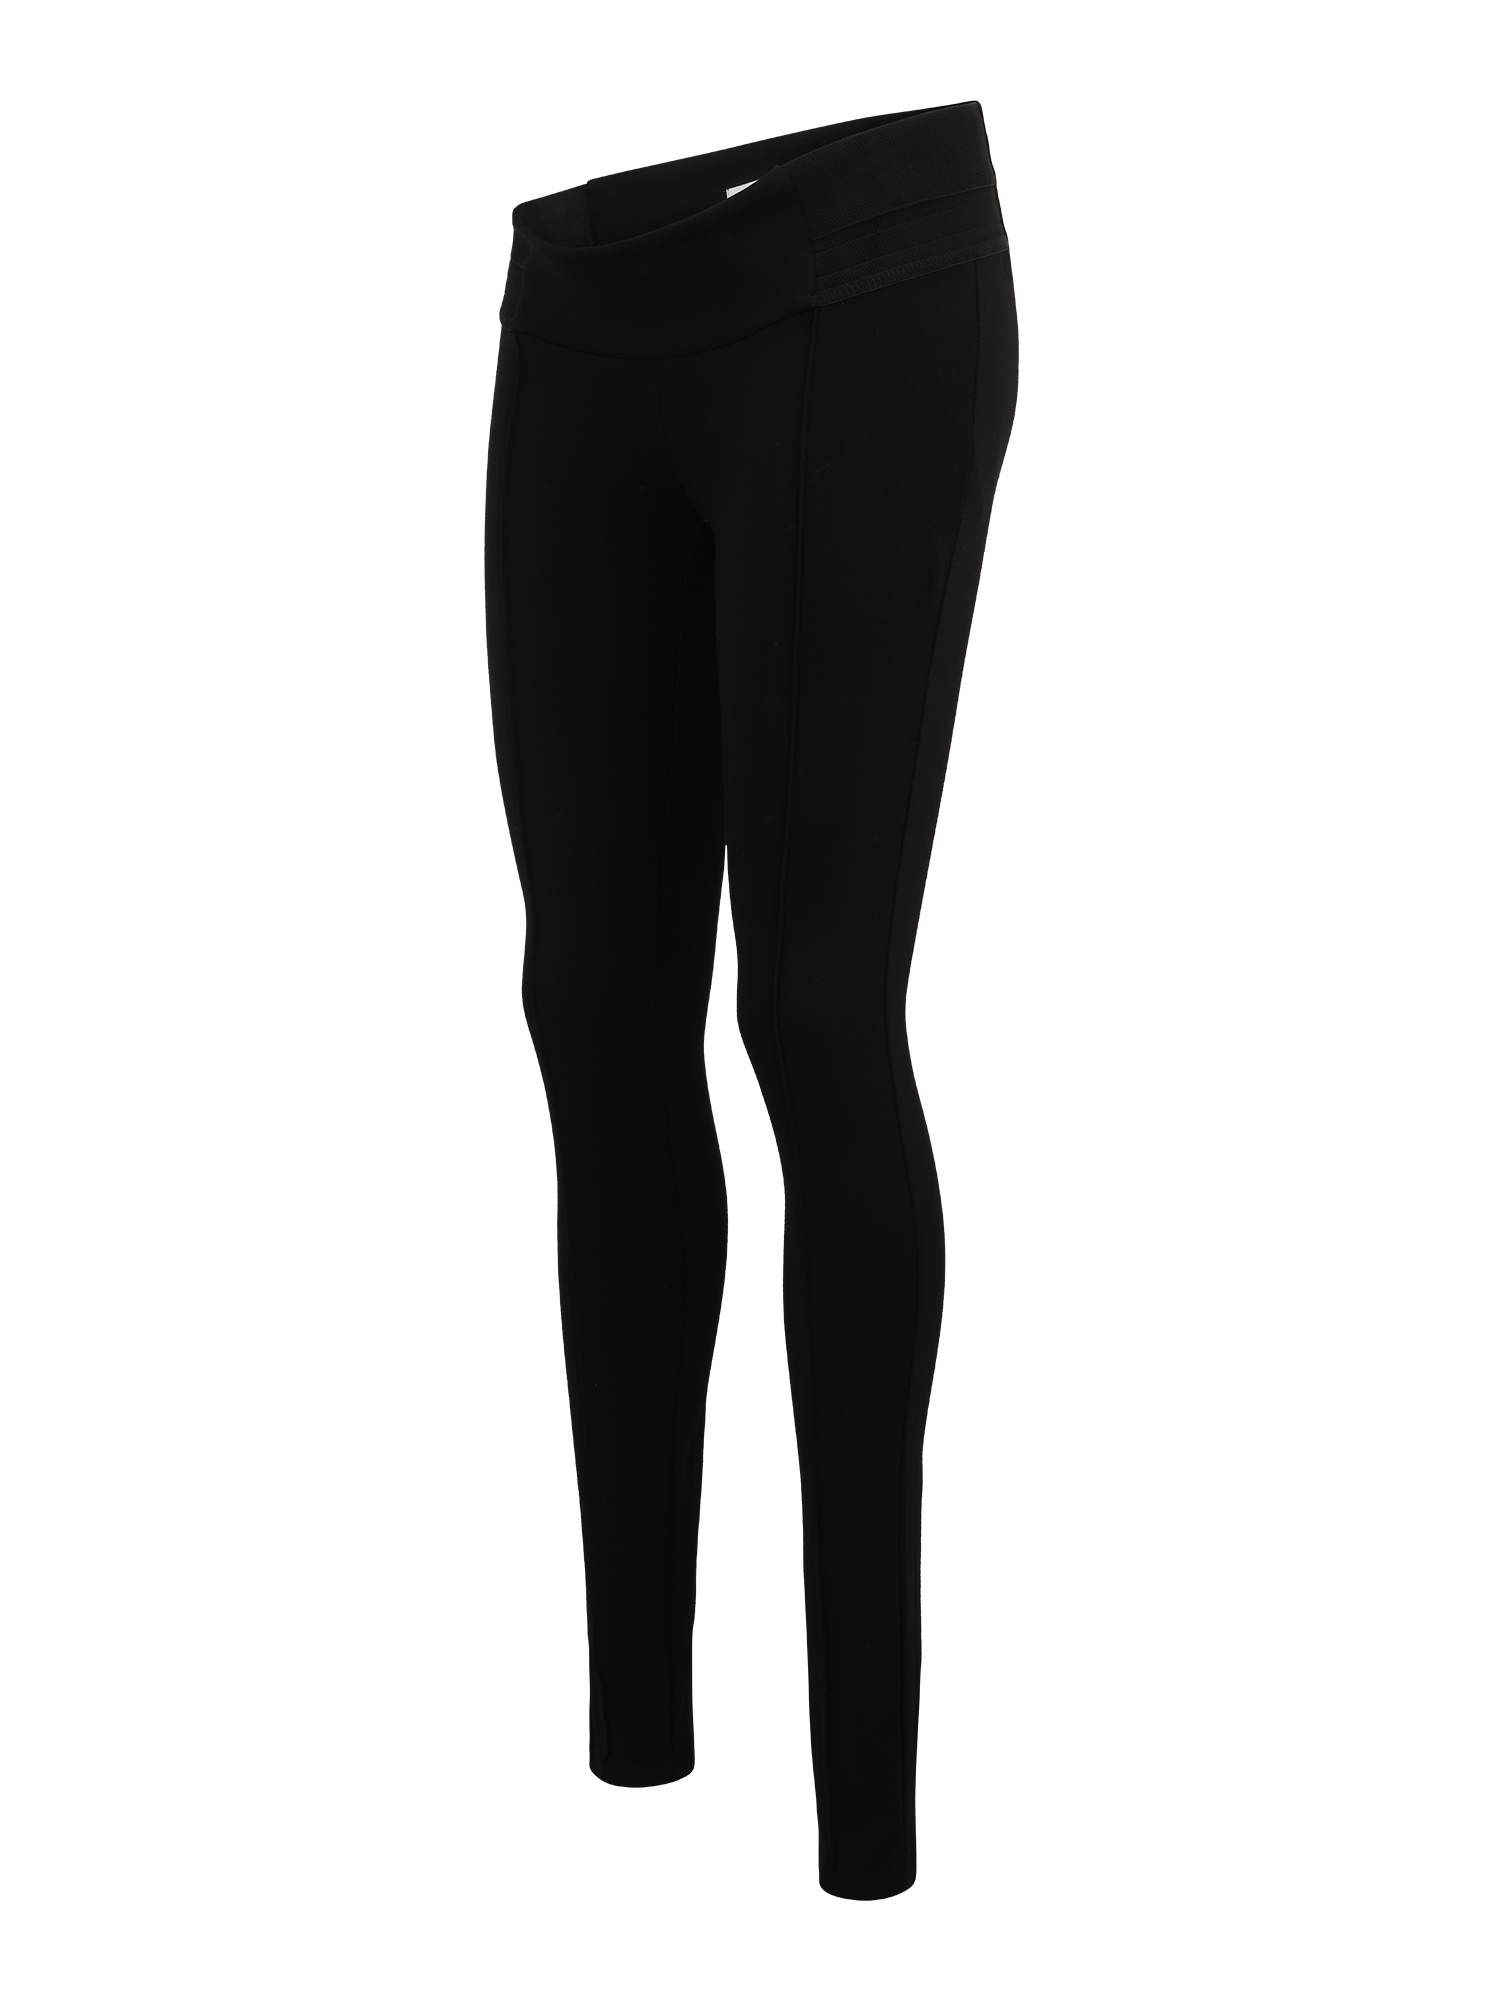 Spodnie & jeansy Kobiety MAMALICIOUS Legginsy REYNA w kolorze Czarnym 